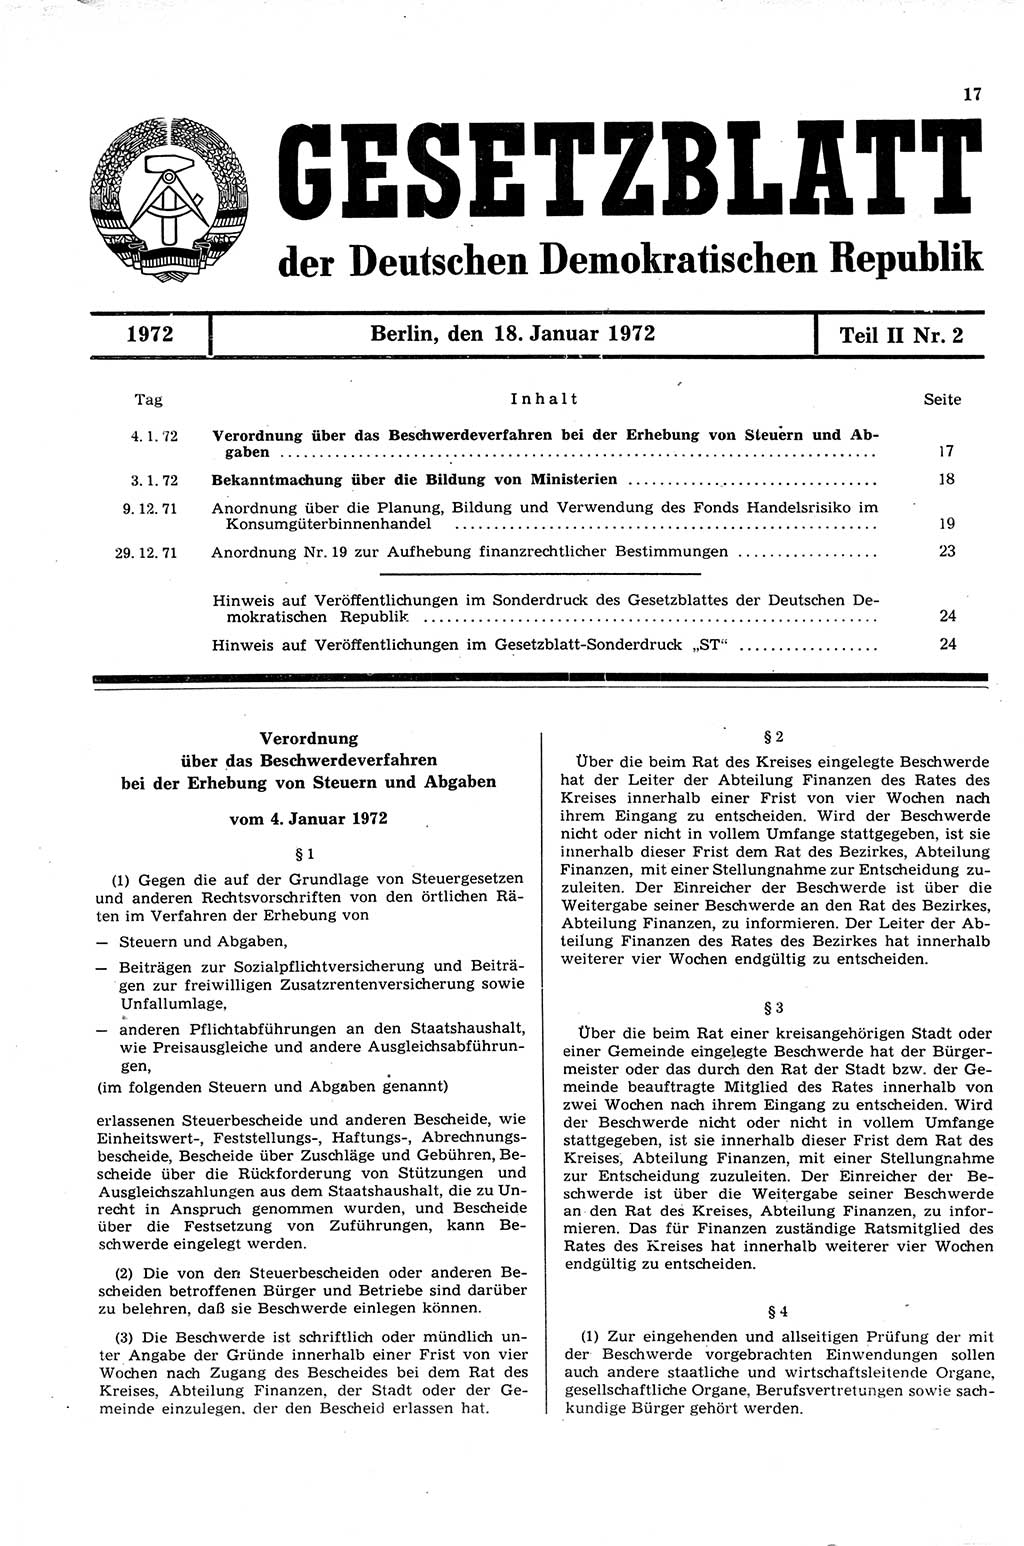 Gesetzblatt (GBl.) der Deutschen Demokratischen Republik (DDR) Teil ⅠⅠ 1972, Seite 17 (GBl. DDR ⅠⅠ 1972, S. 17)